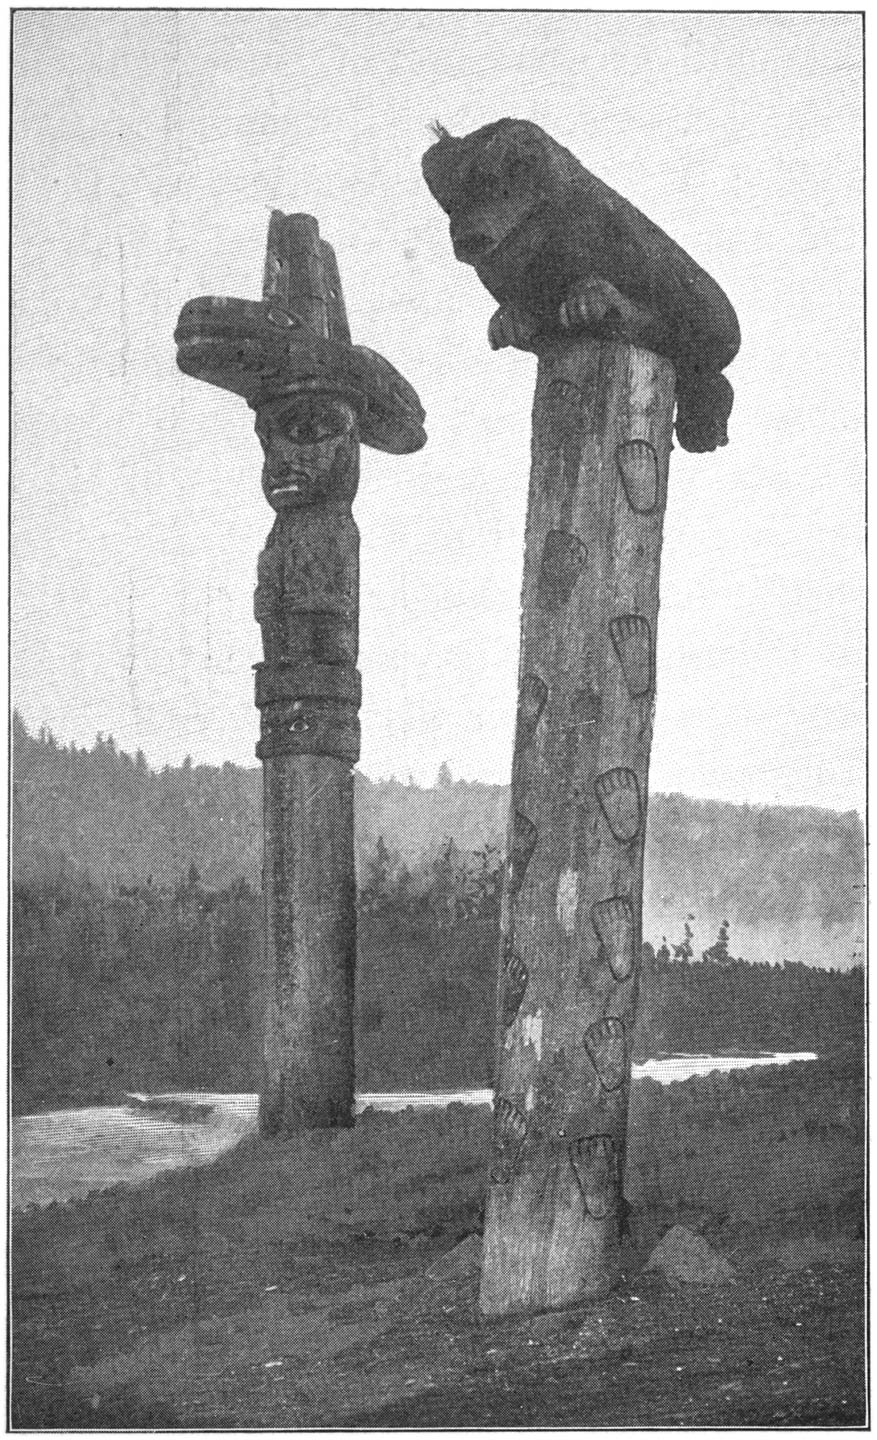 Alaskan Totem Poles